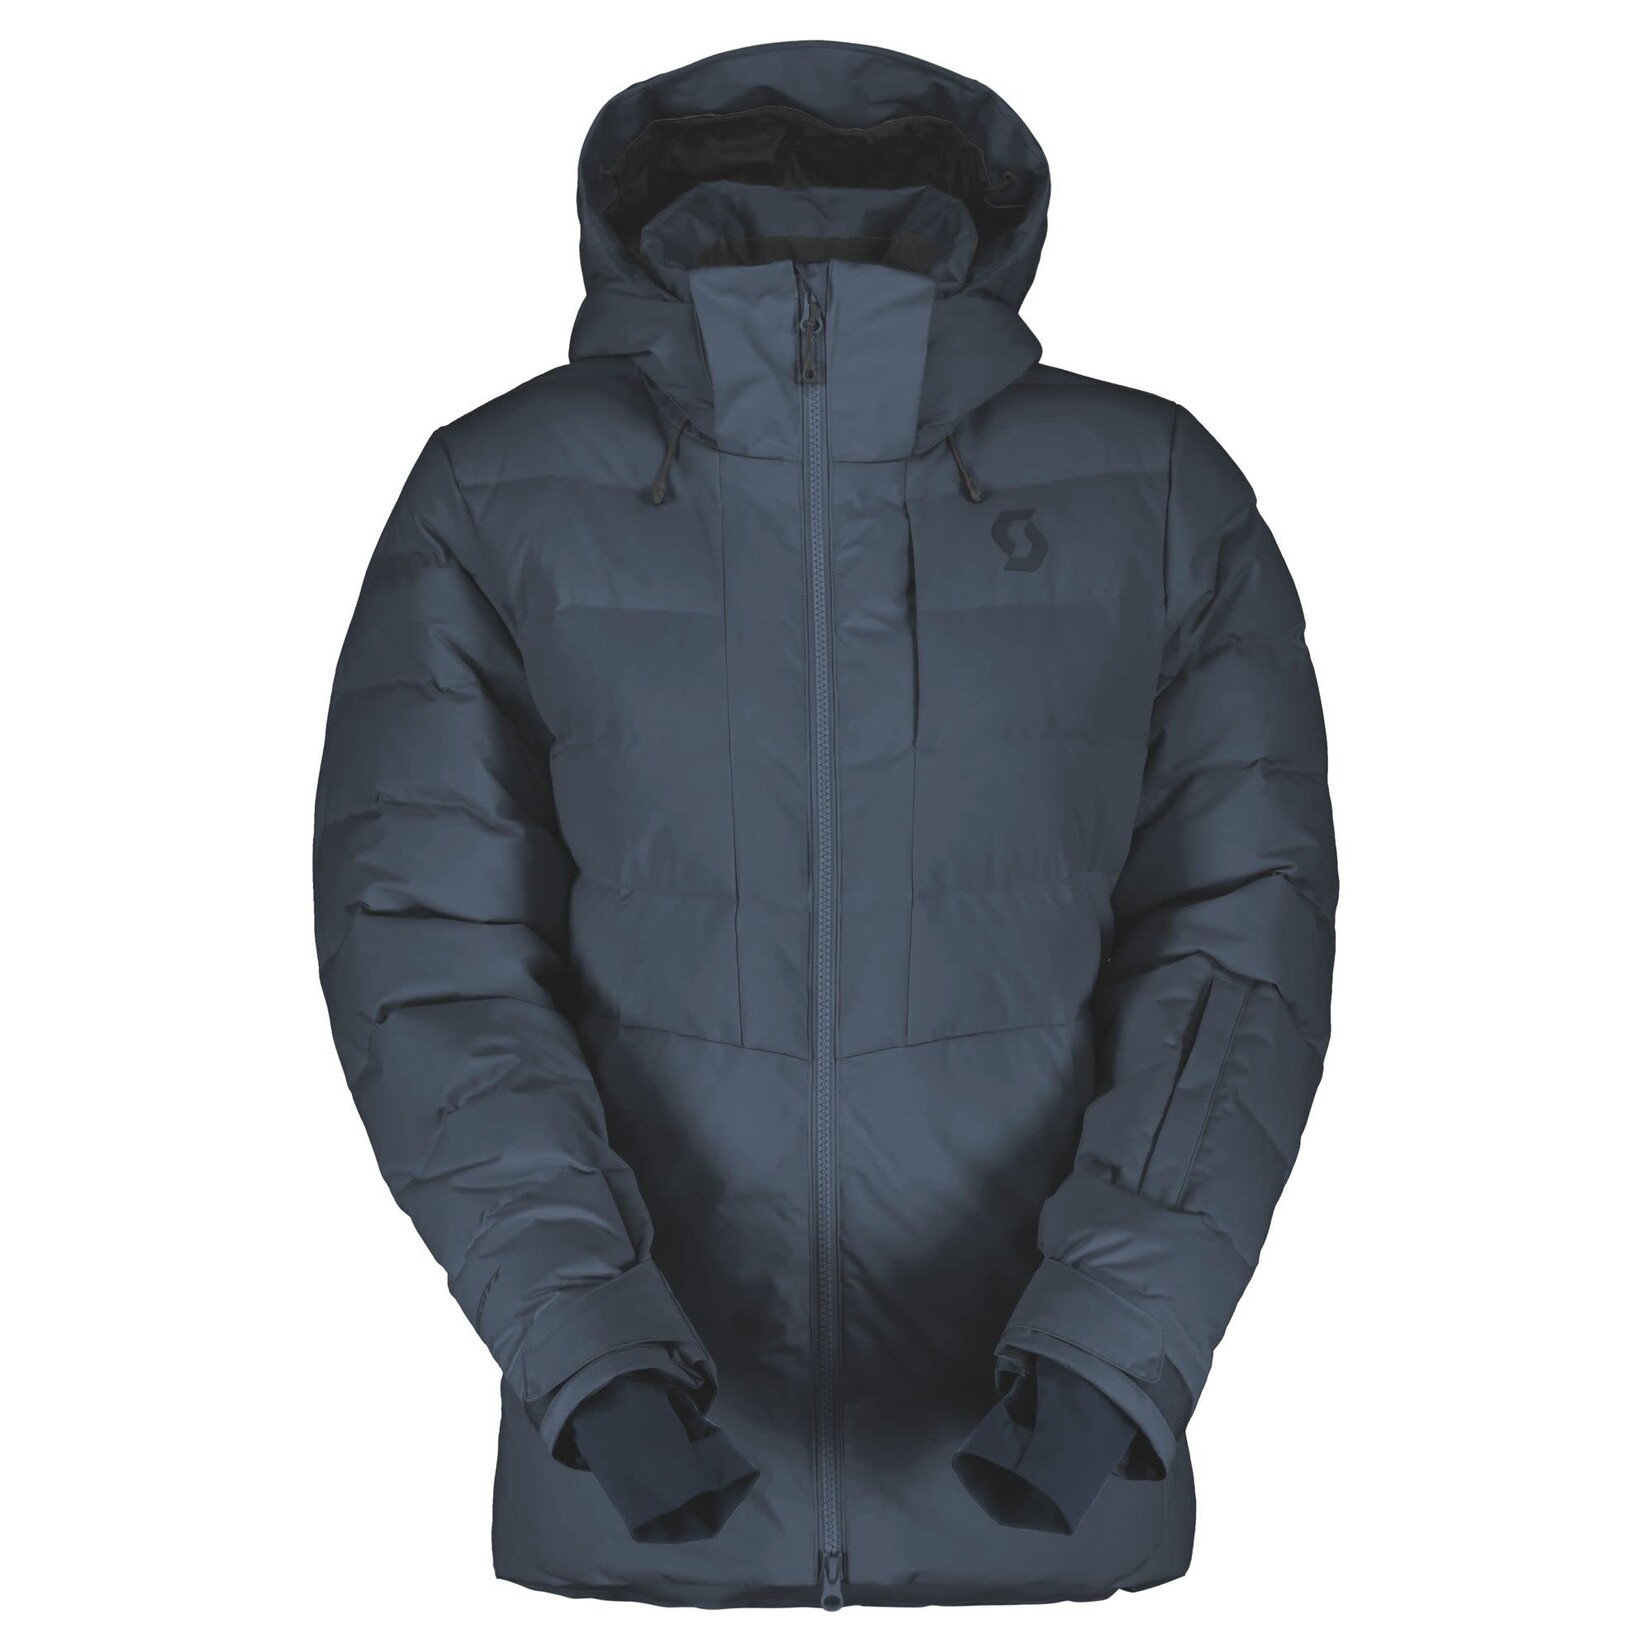 Scott Ultimate Dryo 10 Women's Jacket keeps you warm